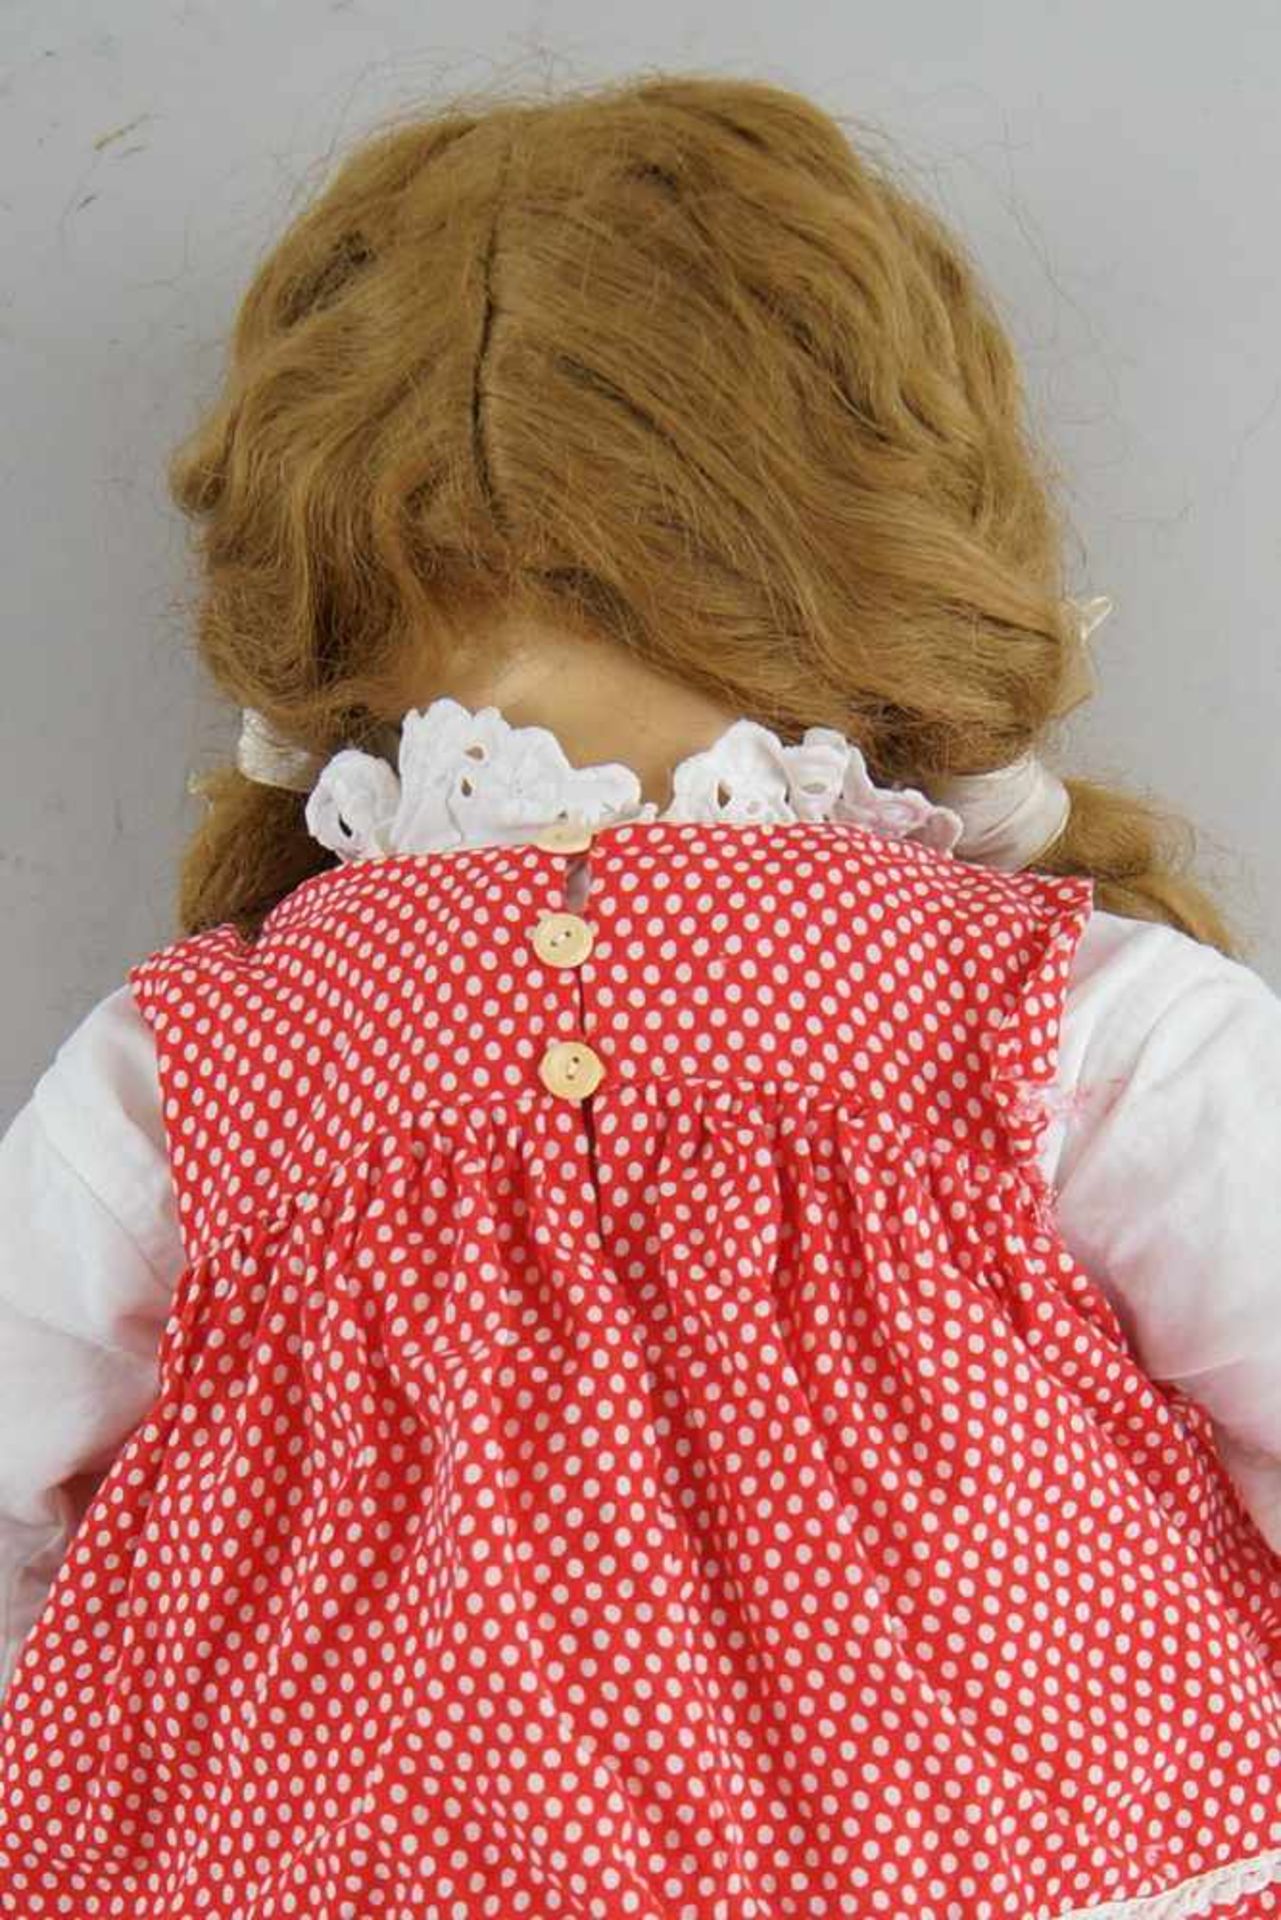 Puppe, wohl K&R, Massekopf, rot gepunktetes Kleid, um 1930, bespielt, 54 cm- - -24.00 % buyer's - Bild 5 aus 5